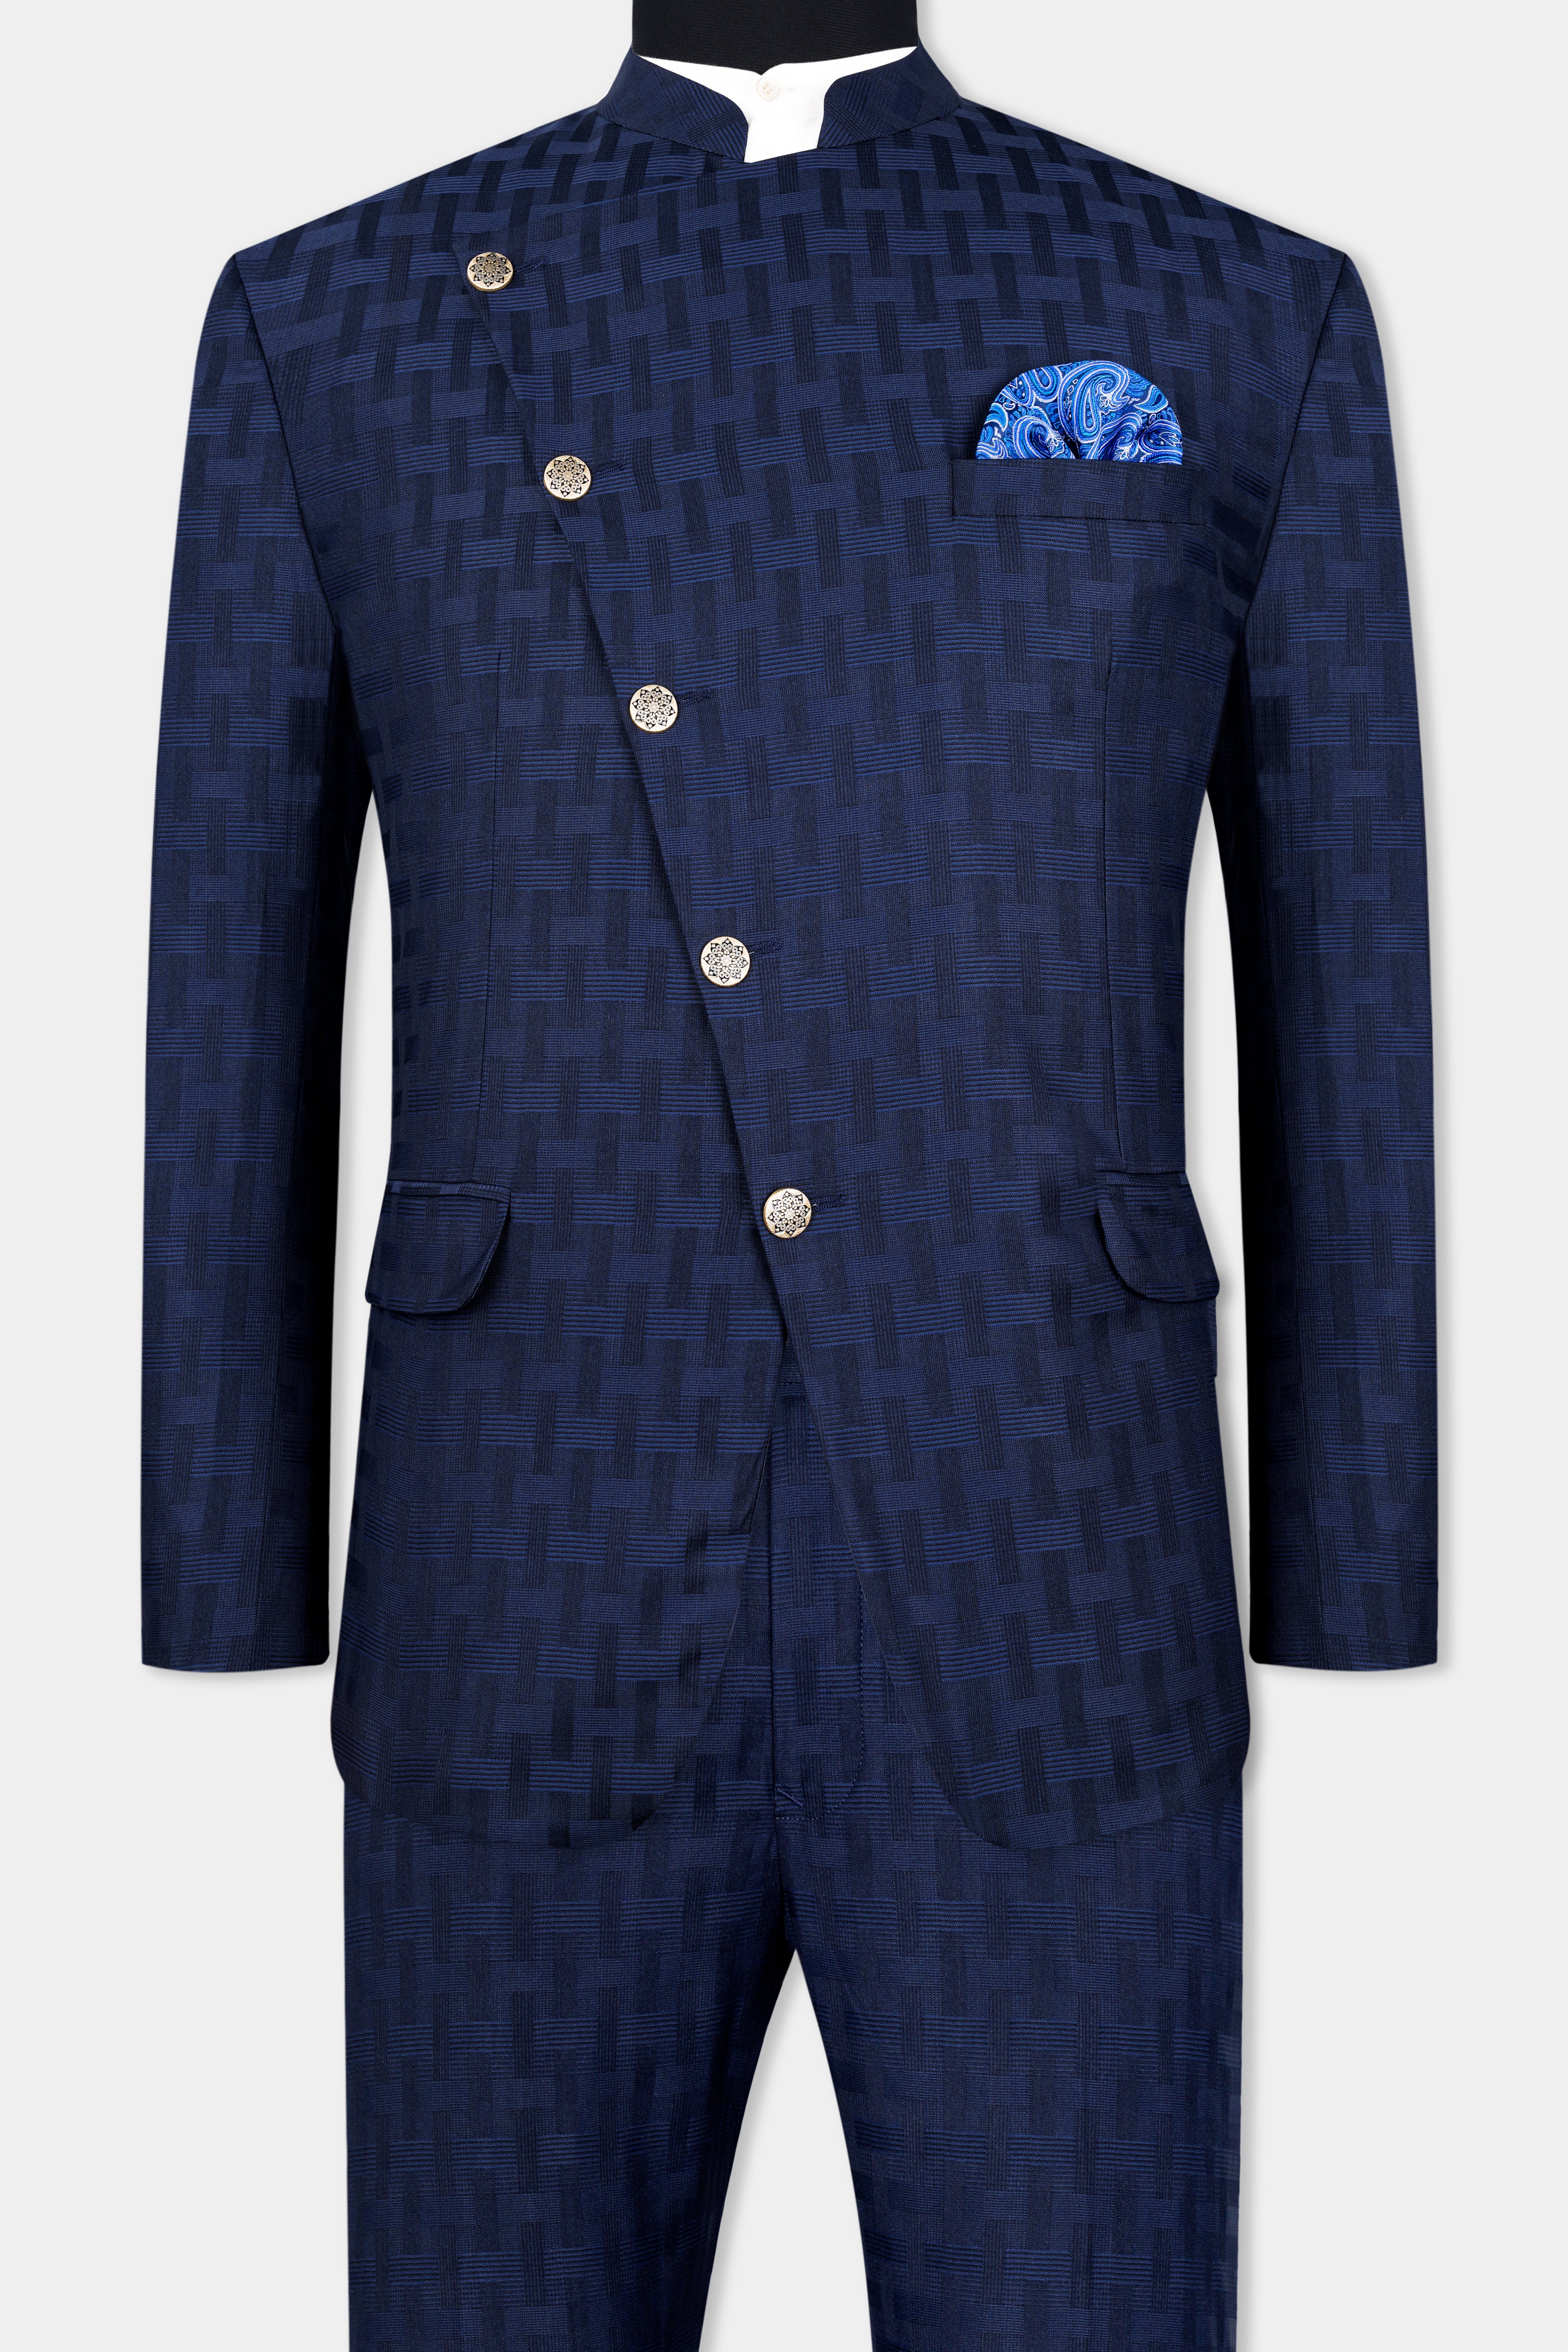 Haiti Blue Wool Rich Cross Buttoned Bandhgala Suit ST2956-CBG-36,ST2956-CBG-38,ST2956-CBG-40,ST2956-CBG-42,ST2956-CBG-44,ST2956-CBG-46,ST2956-CBG-48,ST2956-CBG-50,ST2956-CBG-52,ST2956-CBG-54,ST2956-CBG-56,ST2956-CBG-58,ST2956-CBG-60